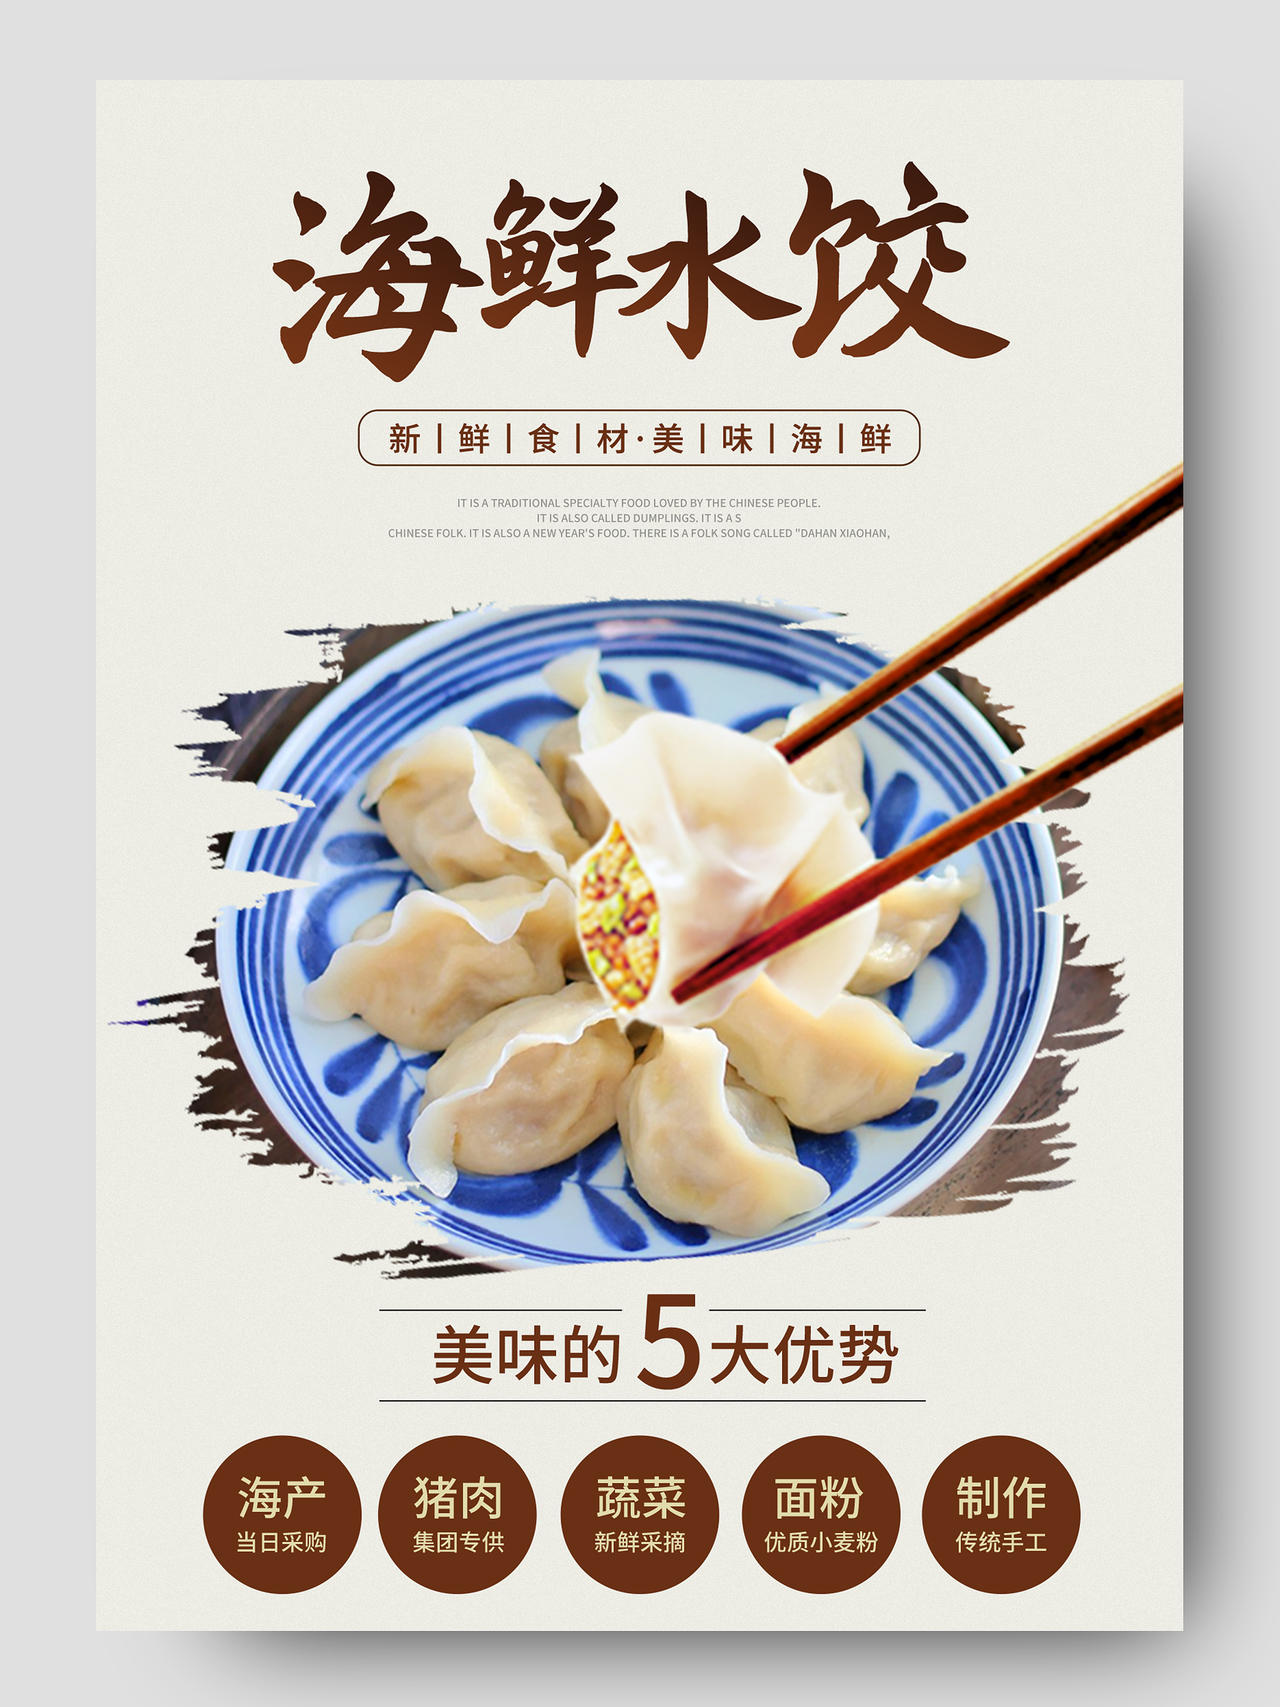 白色简约海鲜水饺饺子美食食品促销电商美食食品水饺详情页